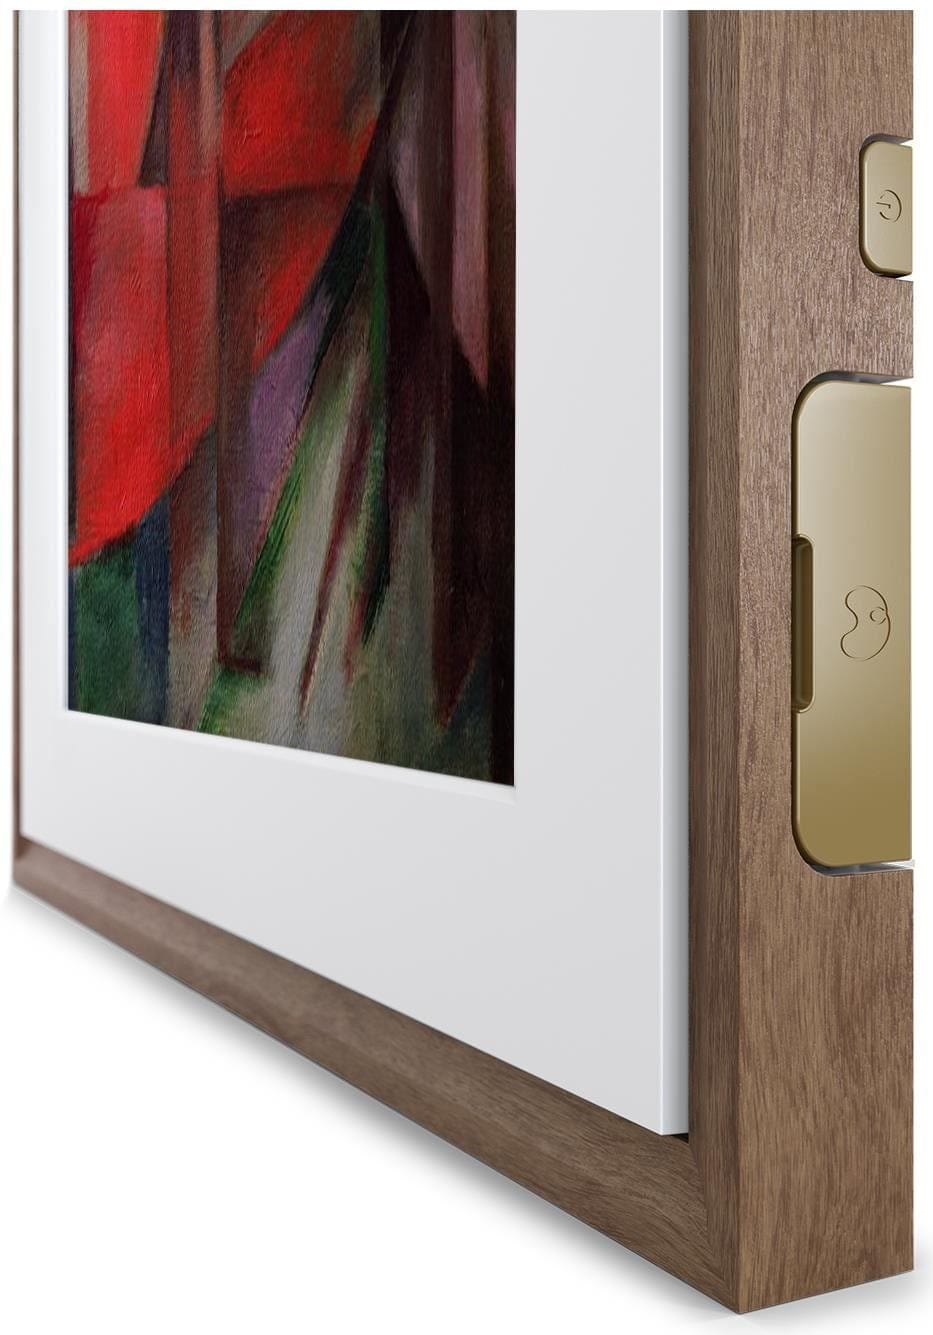 Meural 19x29 Canvas II Digital Smart Art, Photo & Video Frame, Walnut